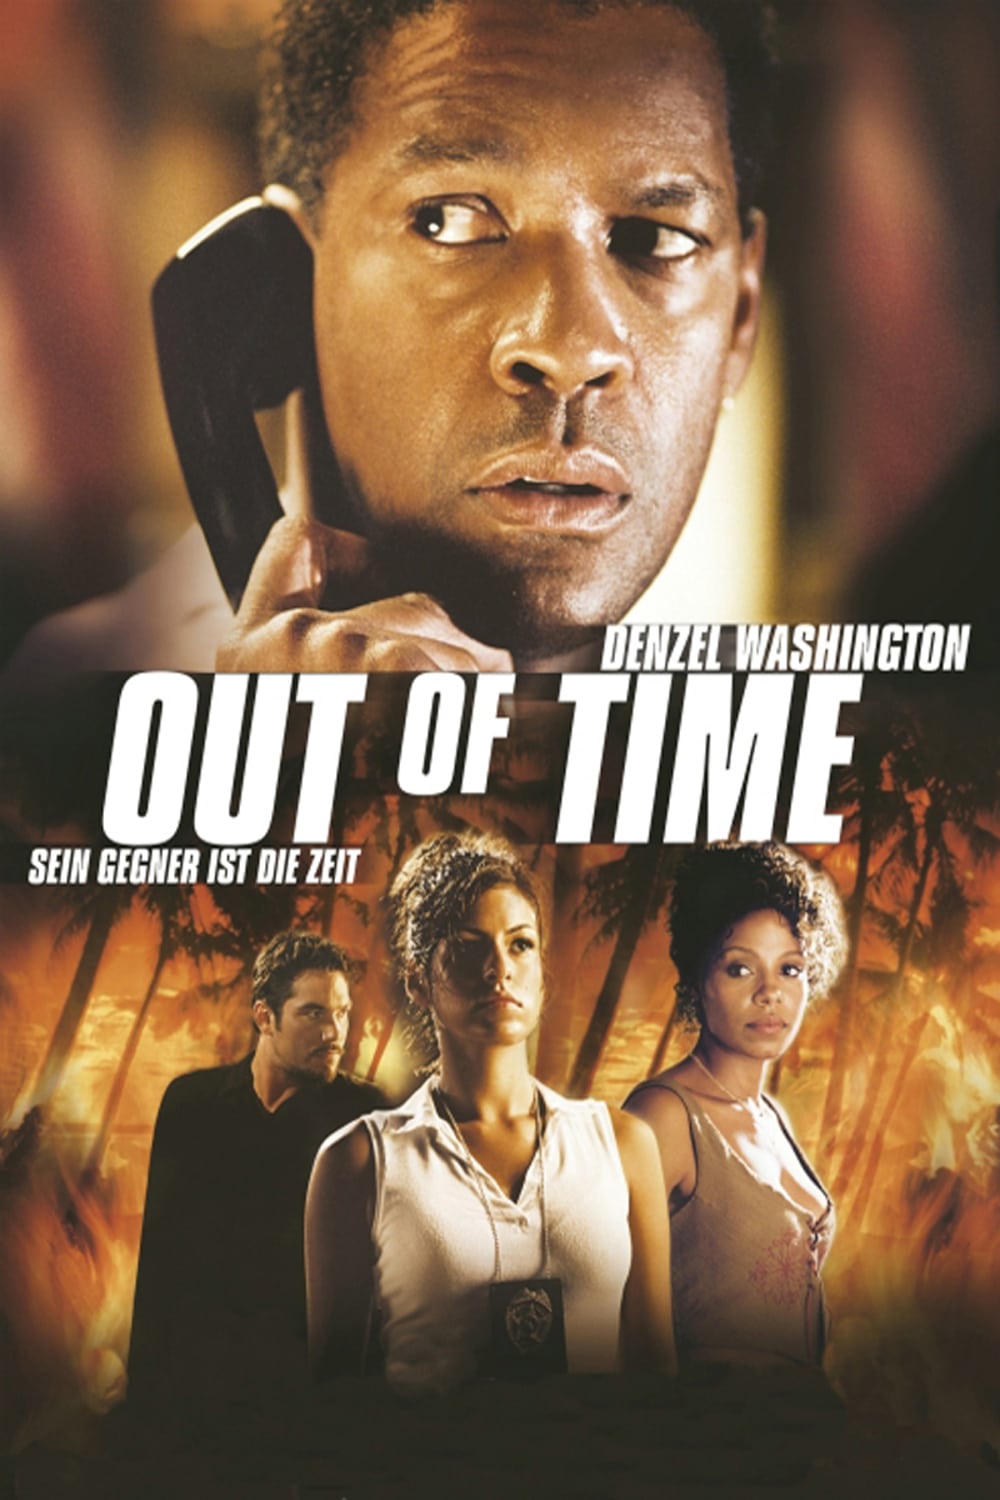 Plakat von "Out of Time - Sein Gegner ist die Zeit"